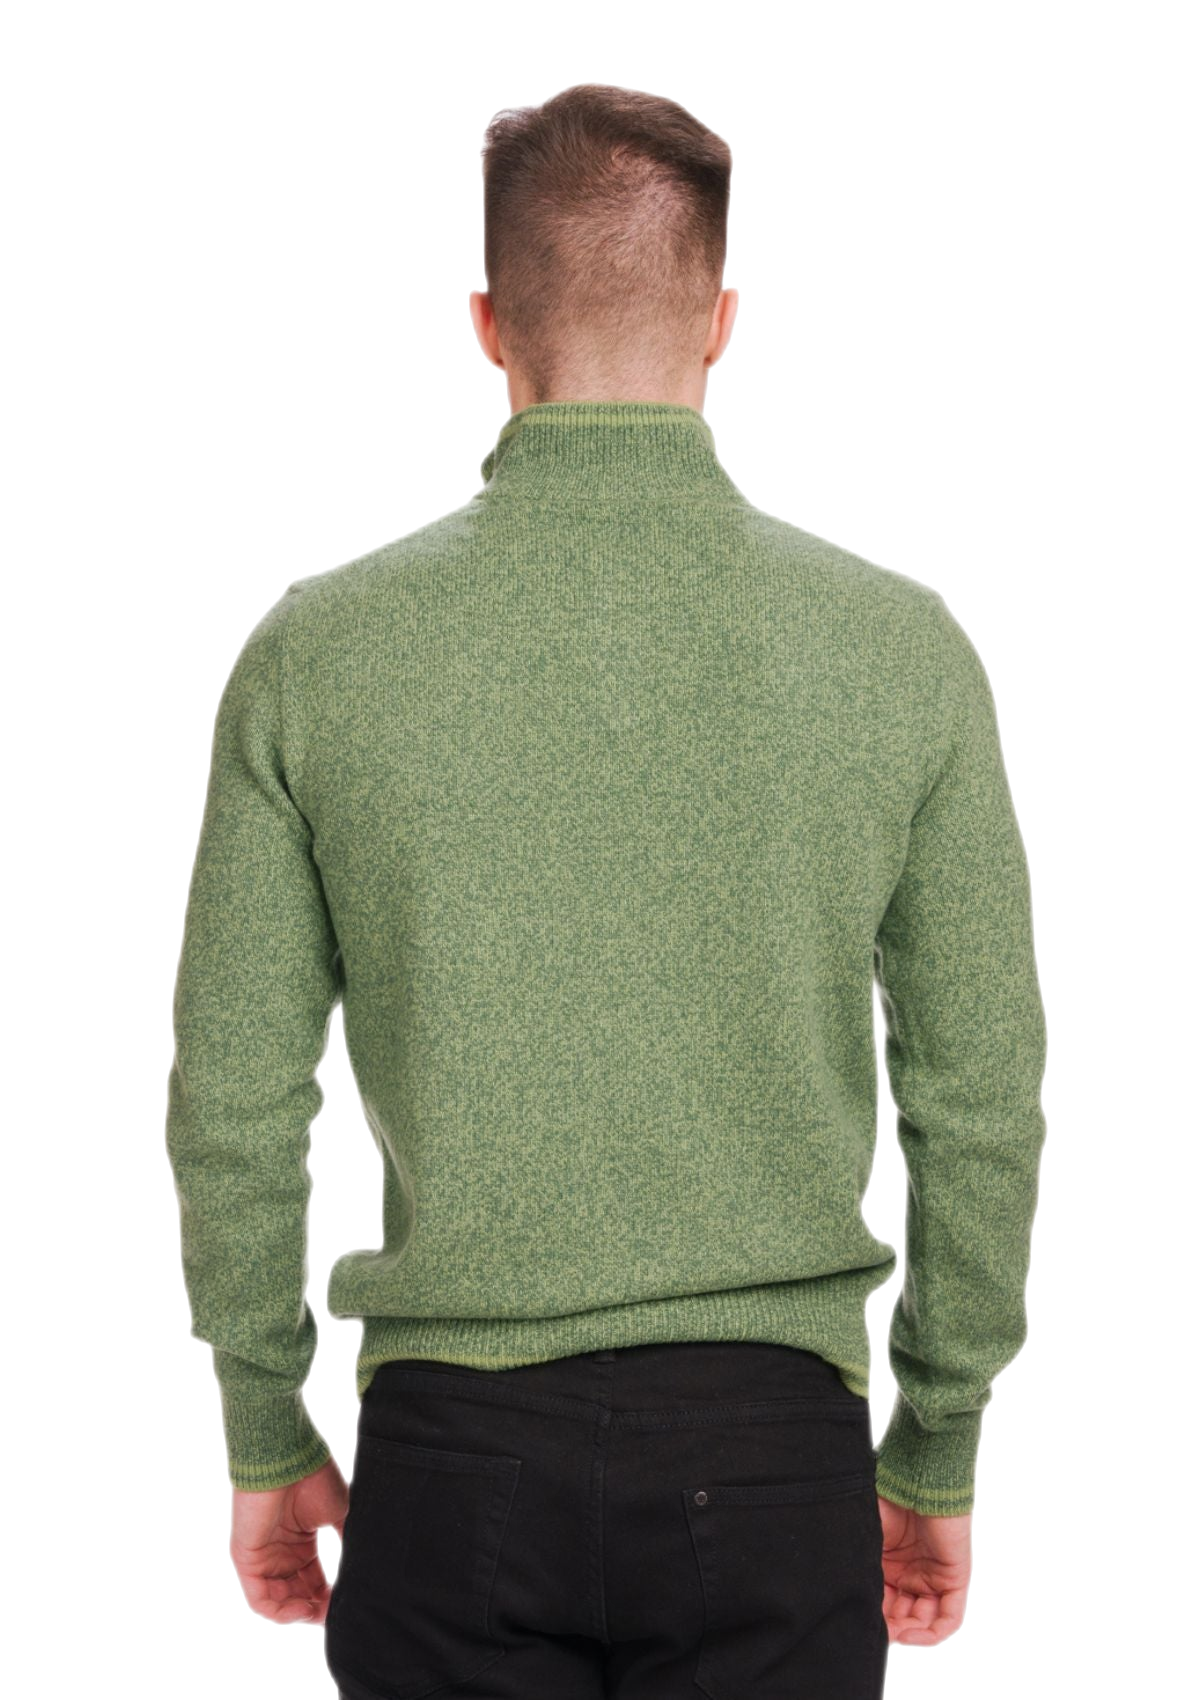 retro maglione in lana merino e cashmere uomo colore verde